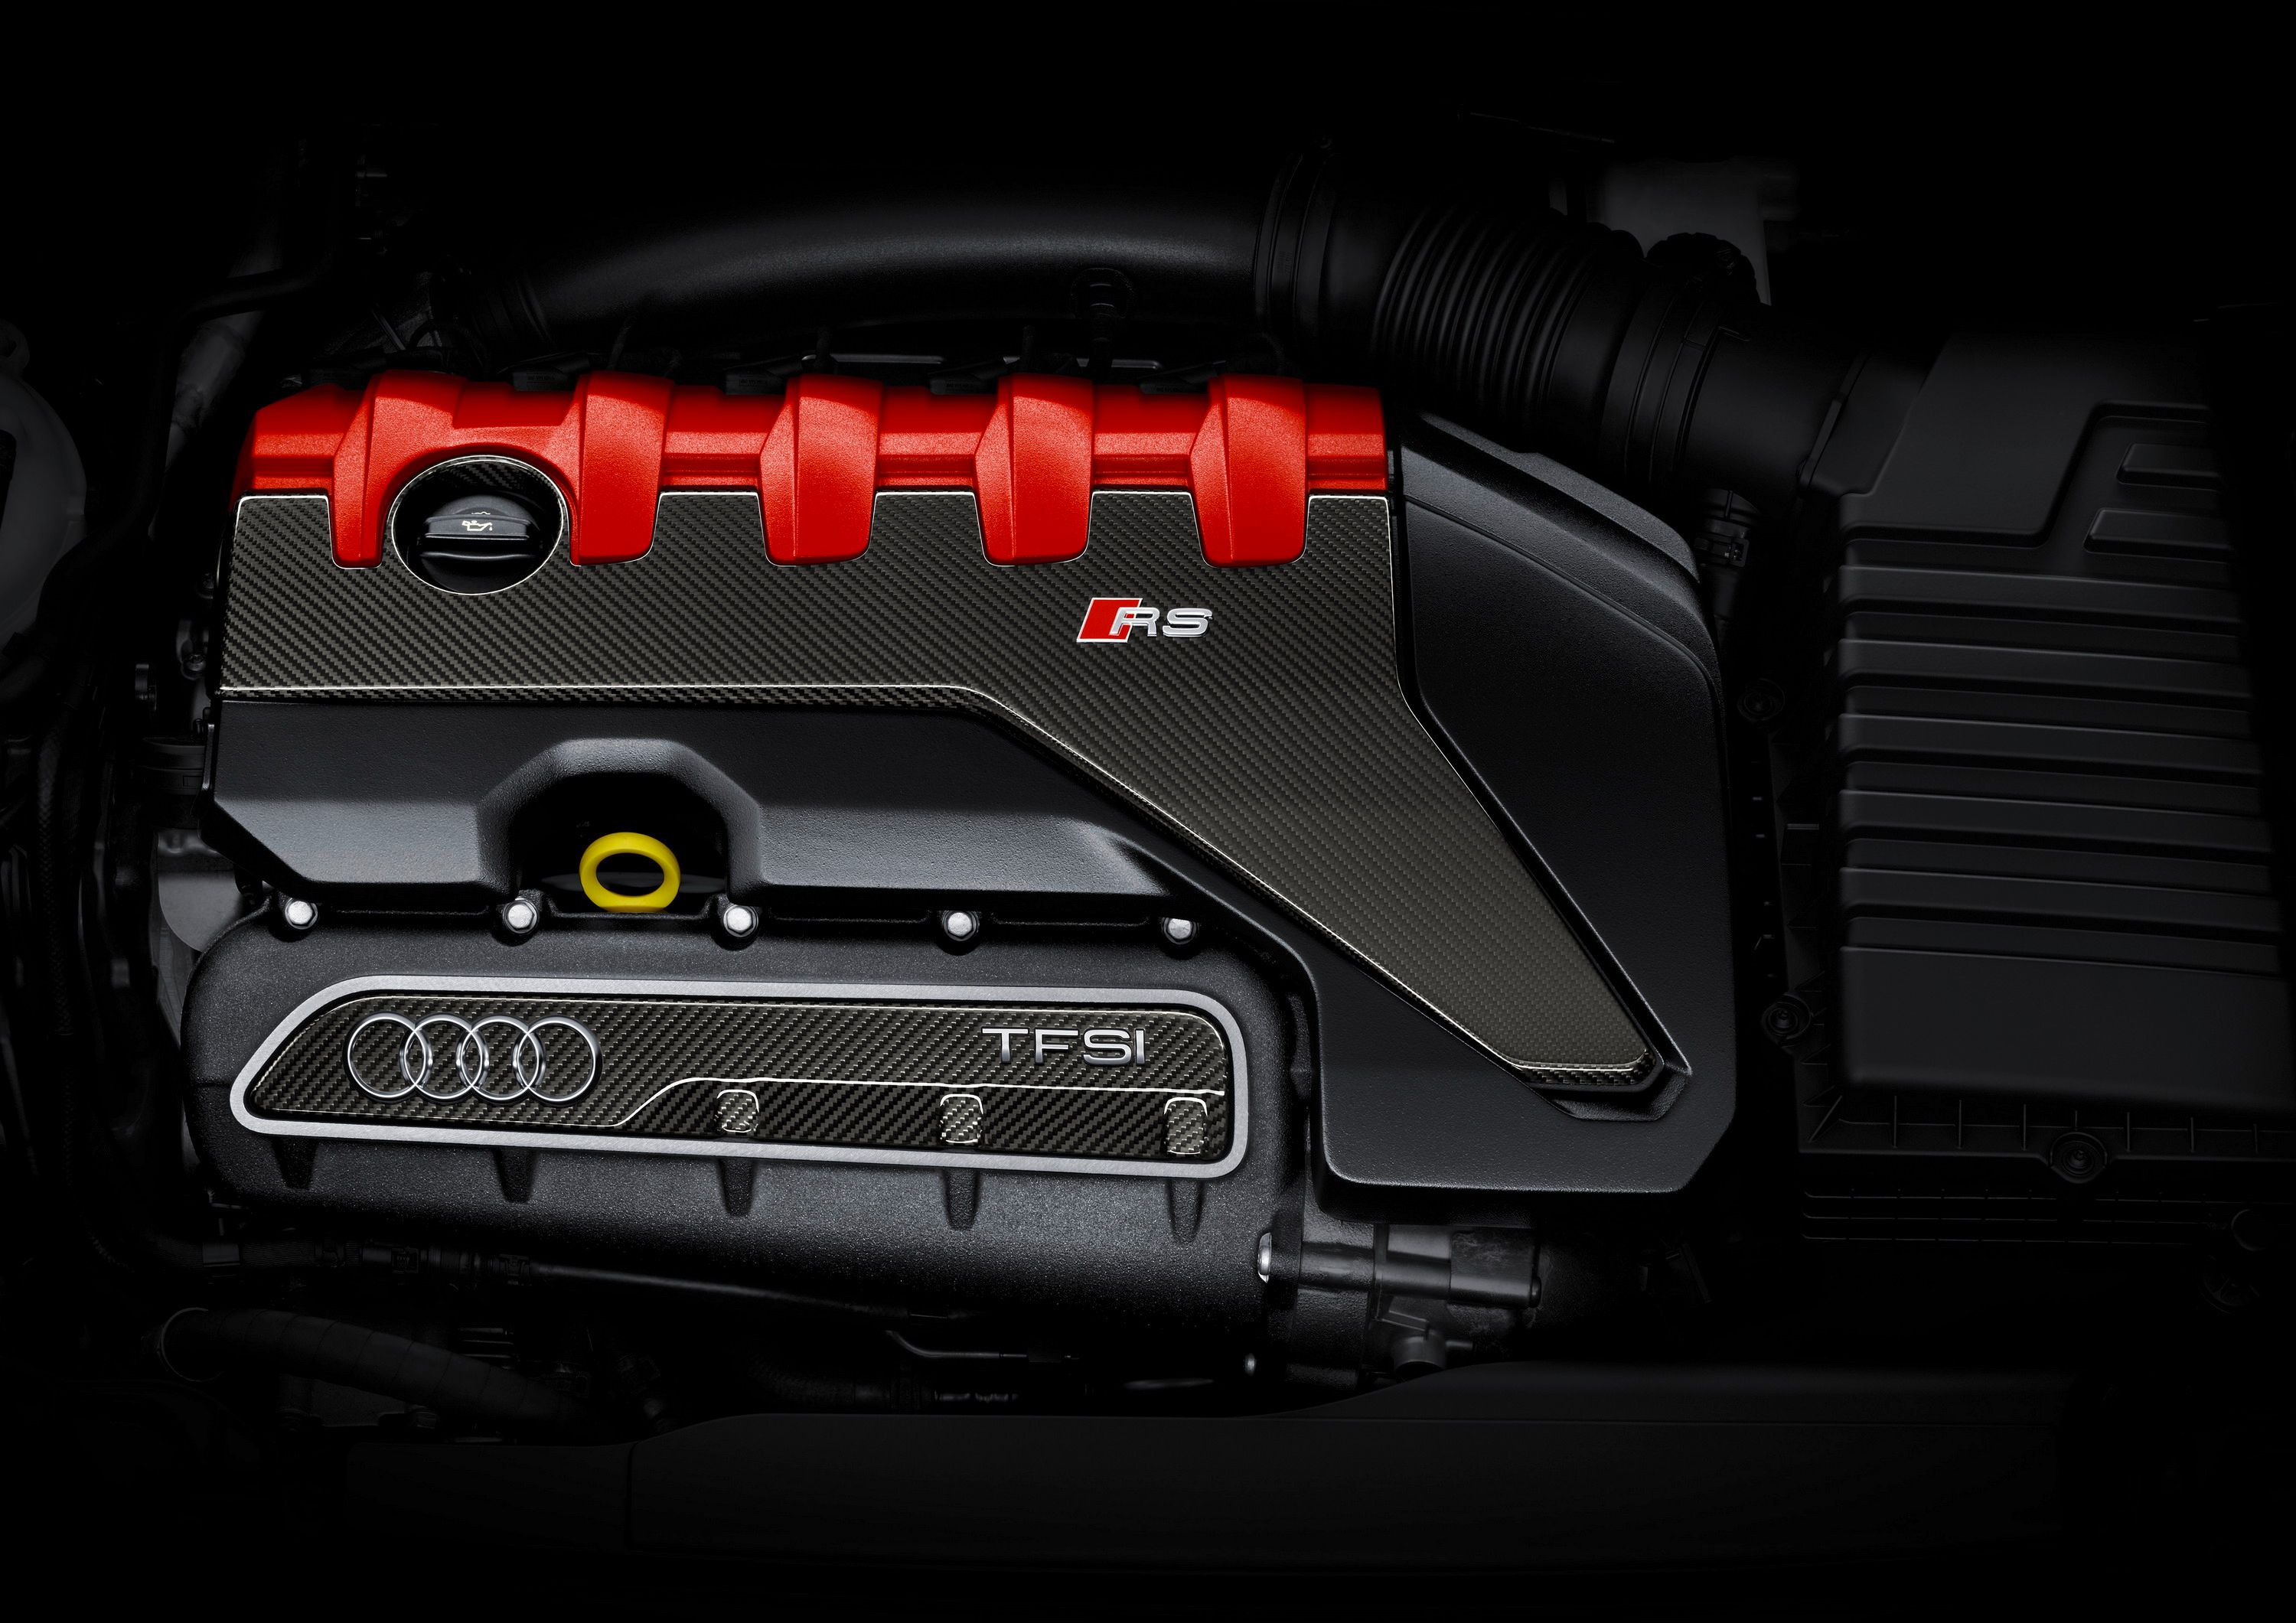 2017 Audi TT-RS